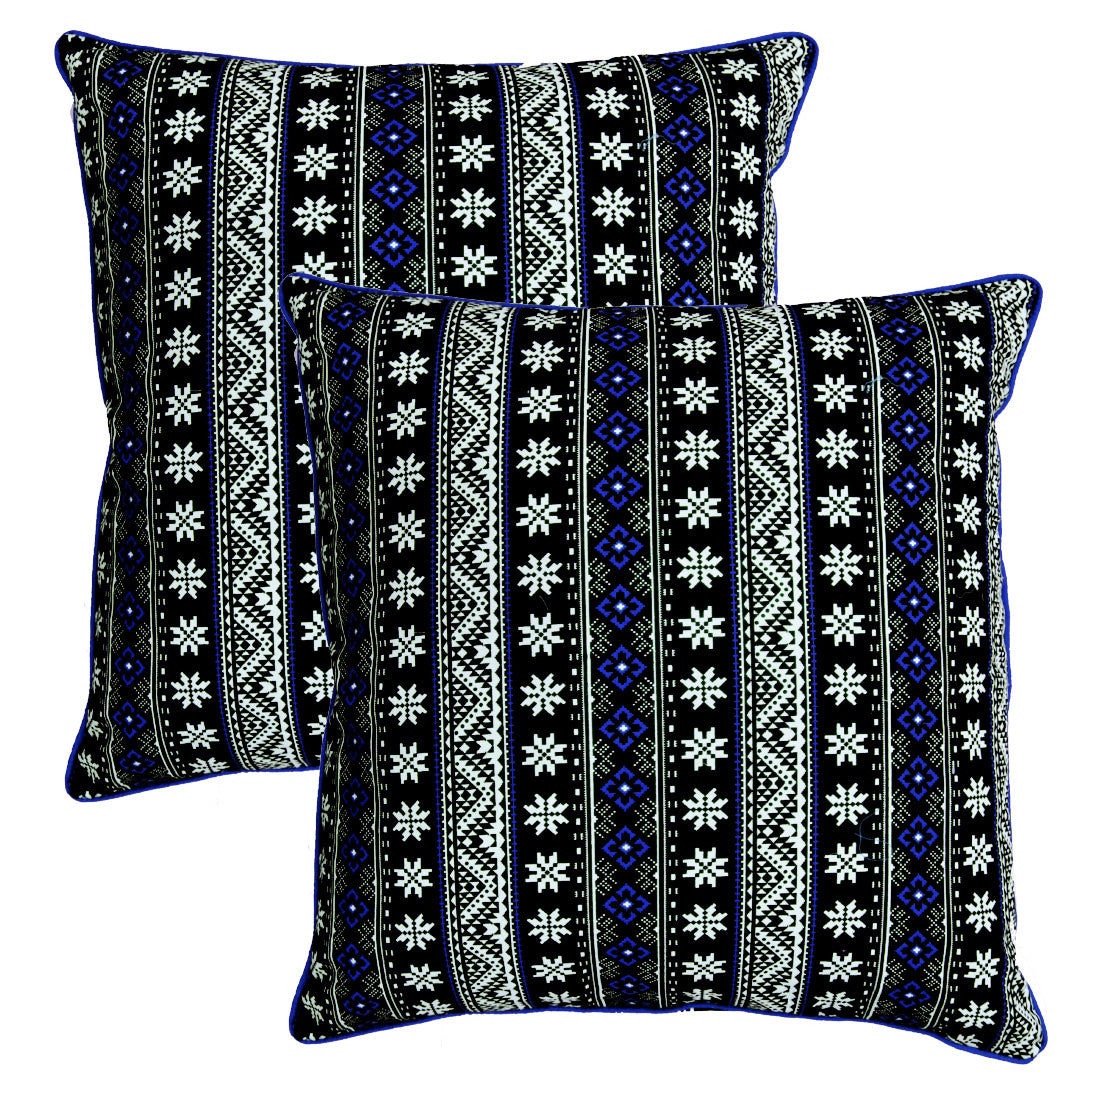 Quartz Printed Geometrical Cotton Cushion Cover - Blue